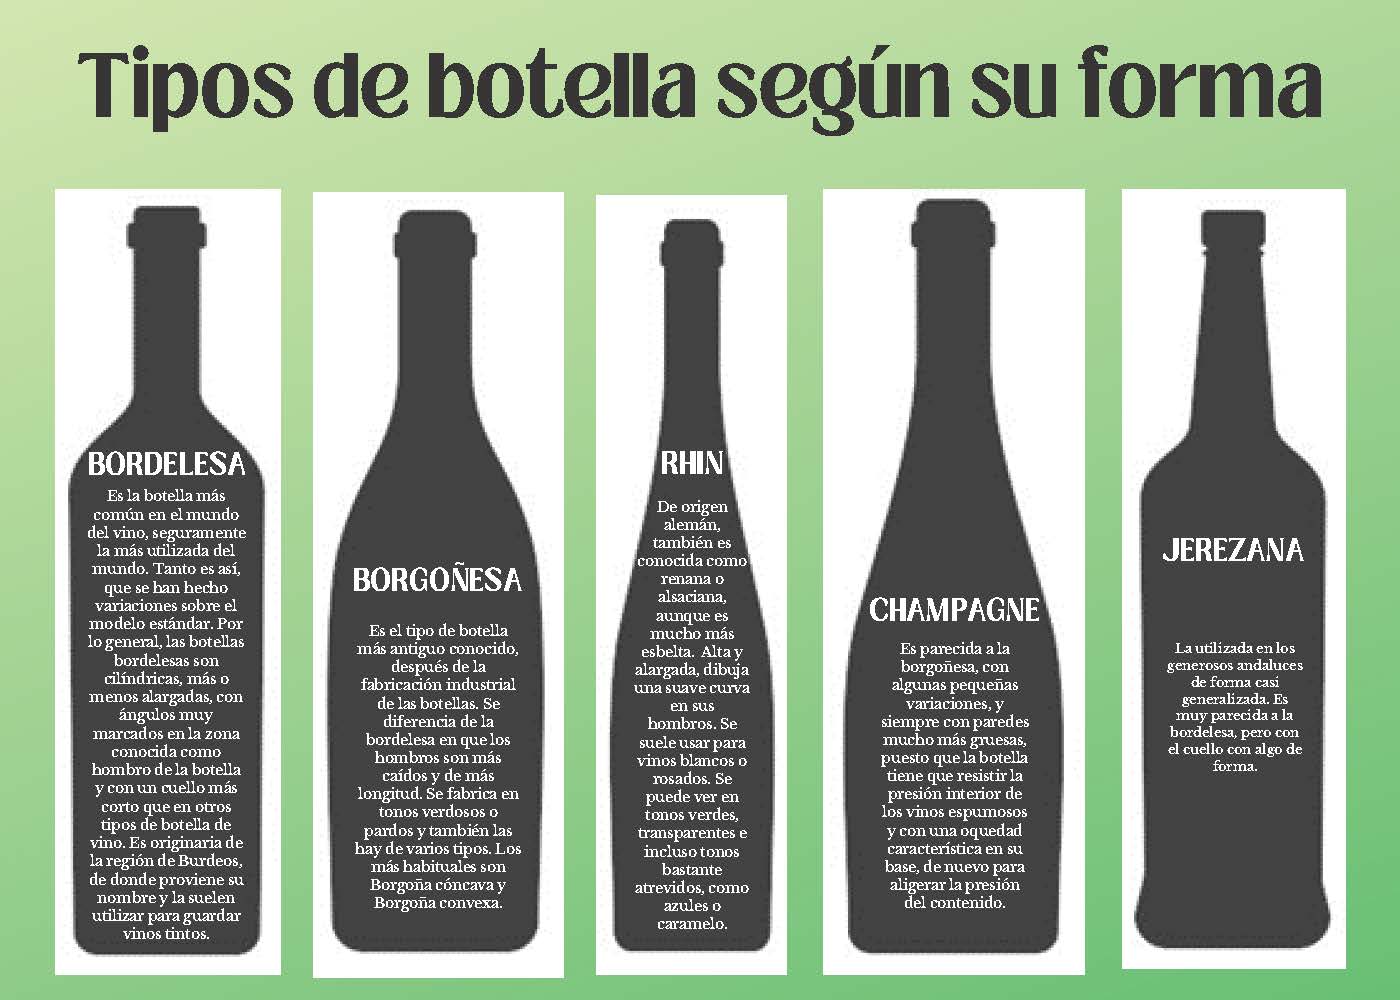 https://biblioteca.ucm.es/qui//file/3-tipo-de-botellas-segun-su-forma-1?ver